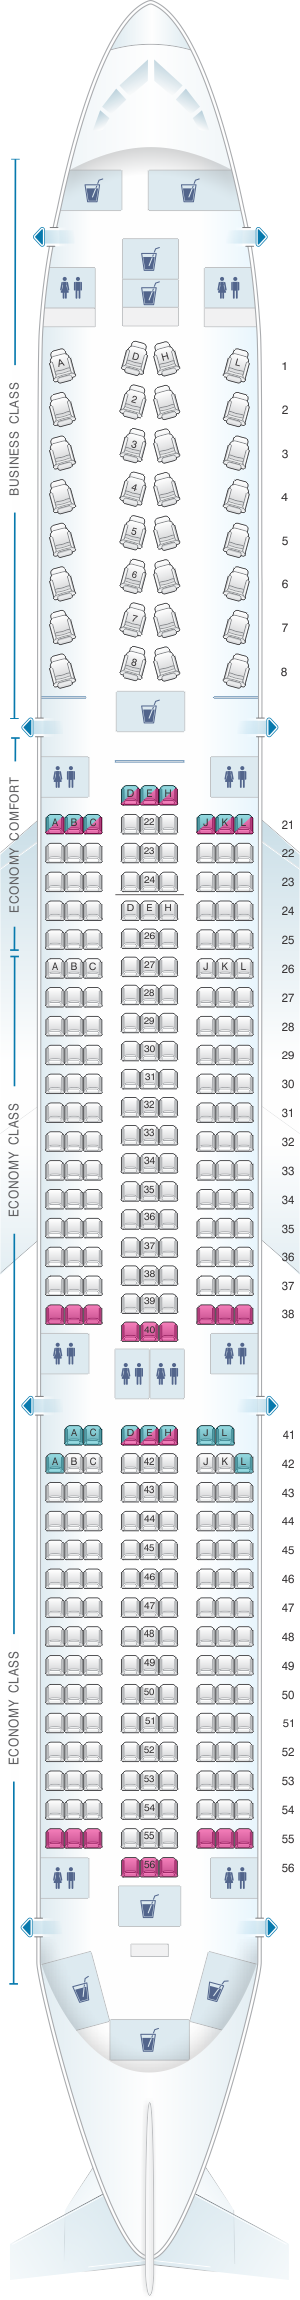 mapa de asientos air mauritius airbus a350 900 plano del avión porn